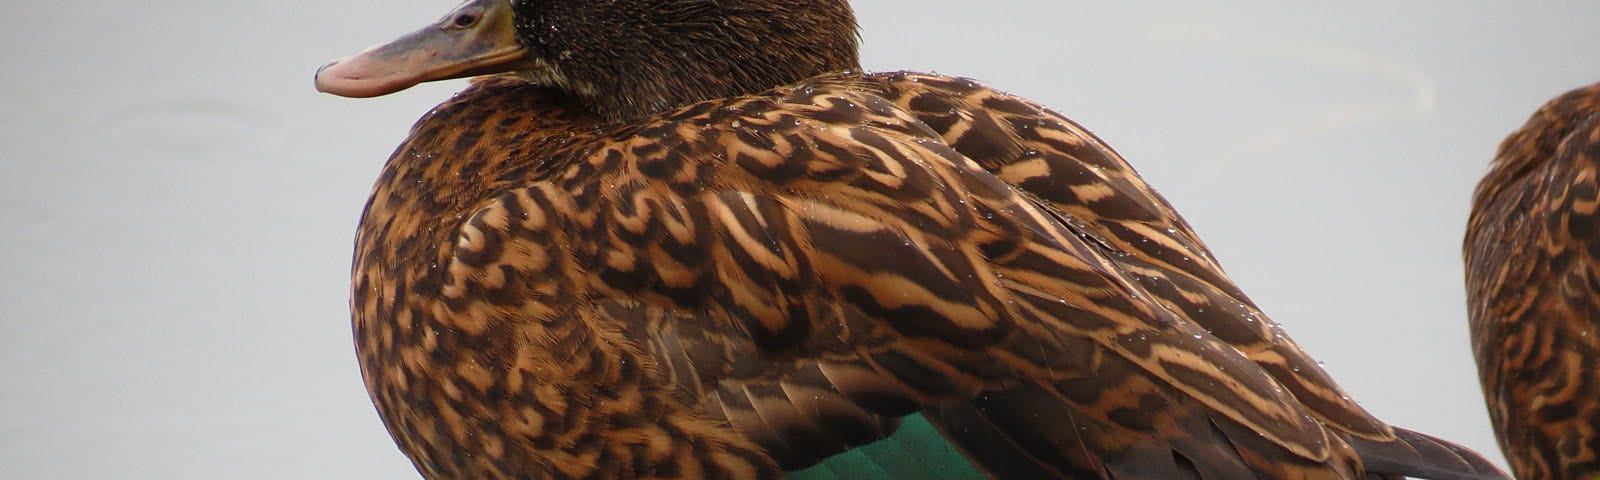 Side-view of a koloa pōhaka (Laysan duck).